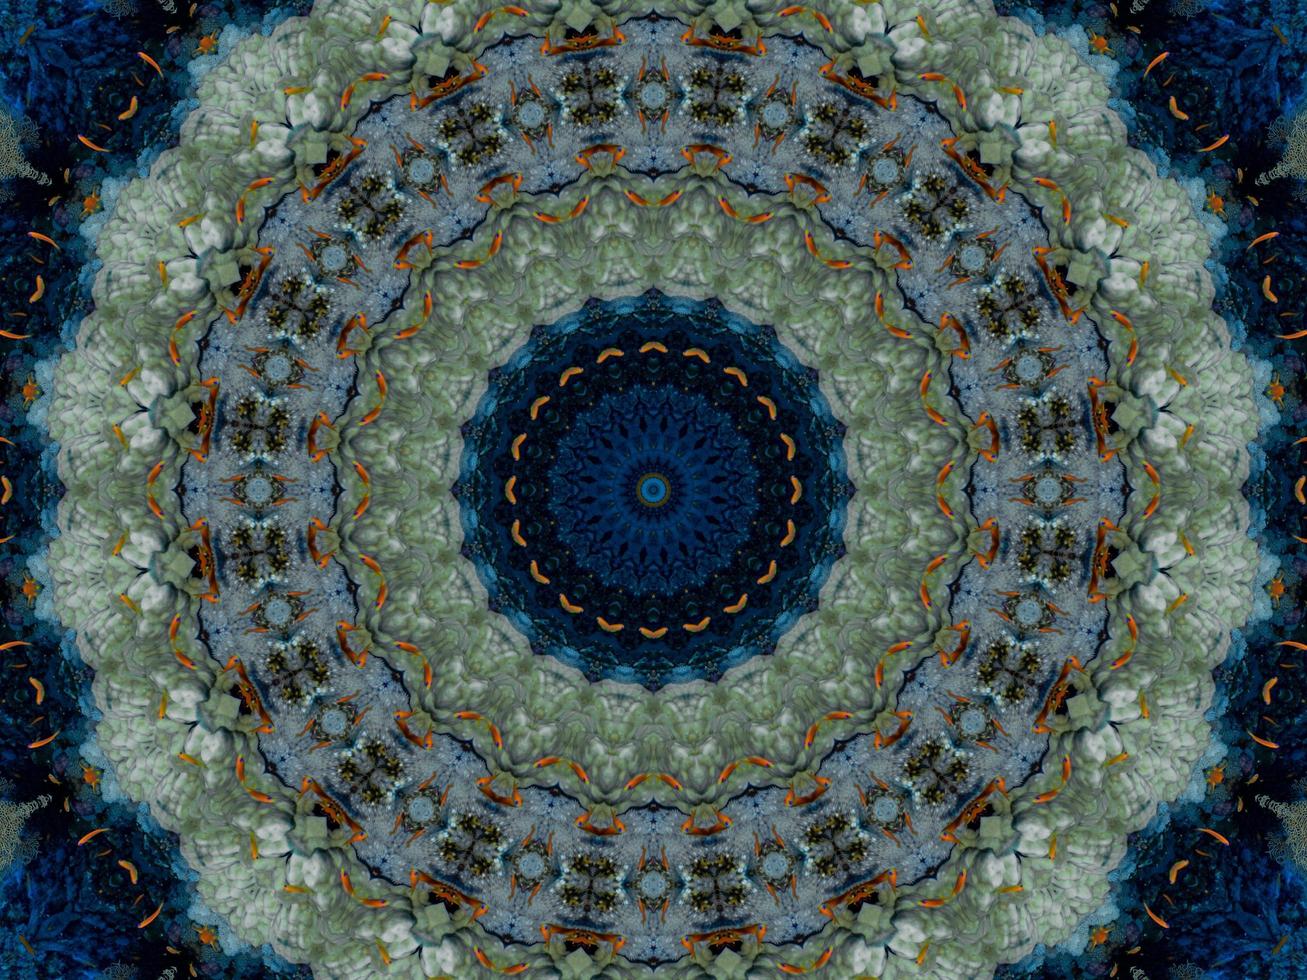 padrão de caleidoscópio de reflexão floral colorida. abstrato. foto grátis.